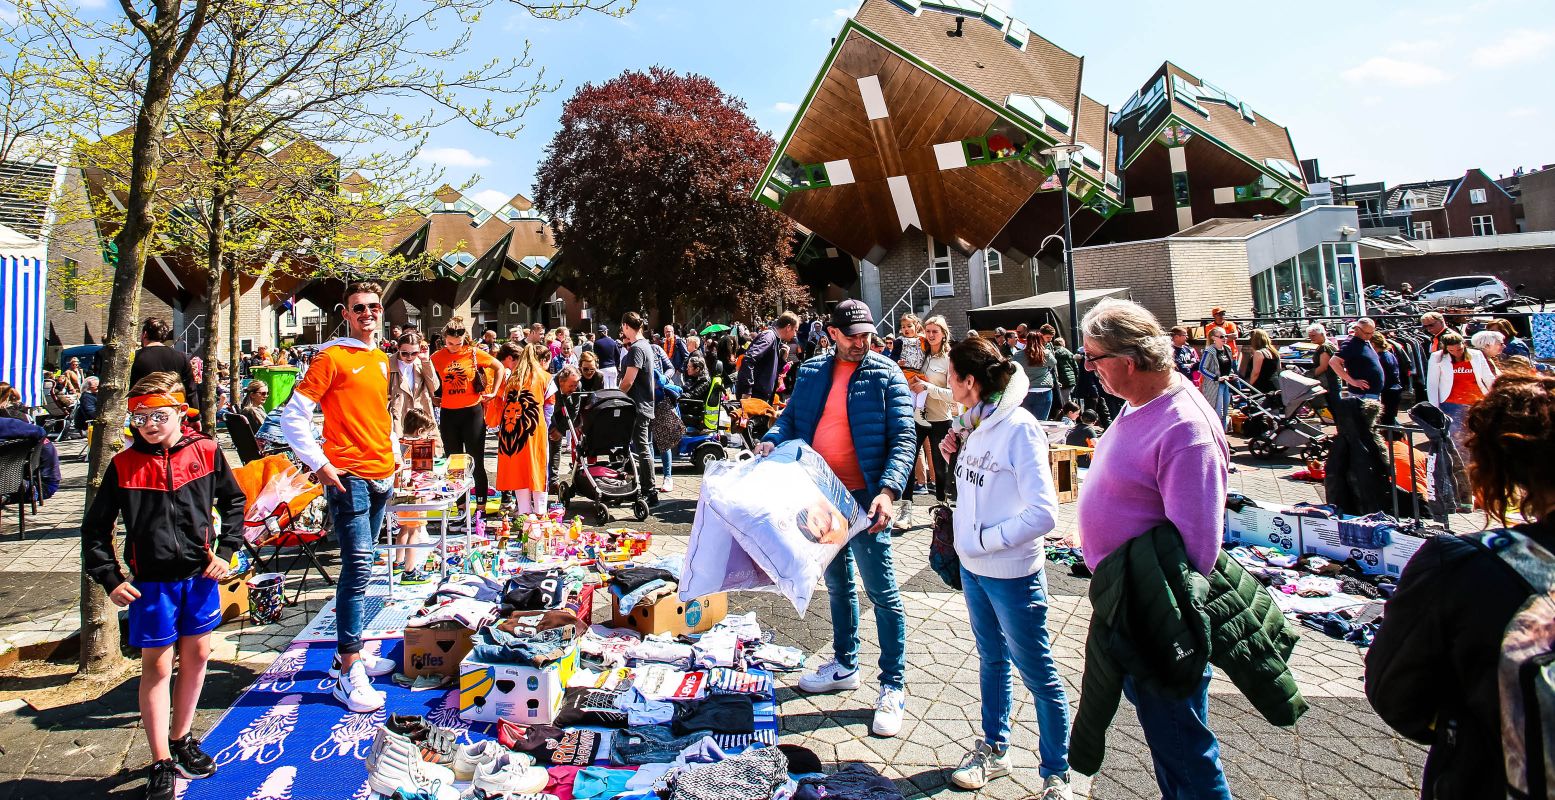 Bezoek met Koningsdag een kleedjesmarkt. Altijd gezellig! Foto: Koningsfeesten Helmond © De Vaste Clique